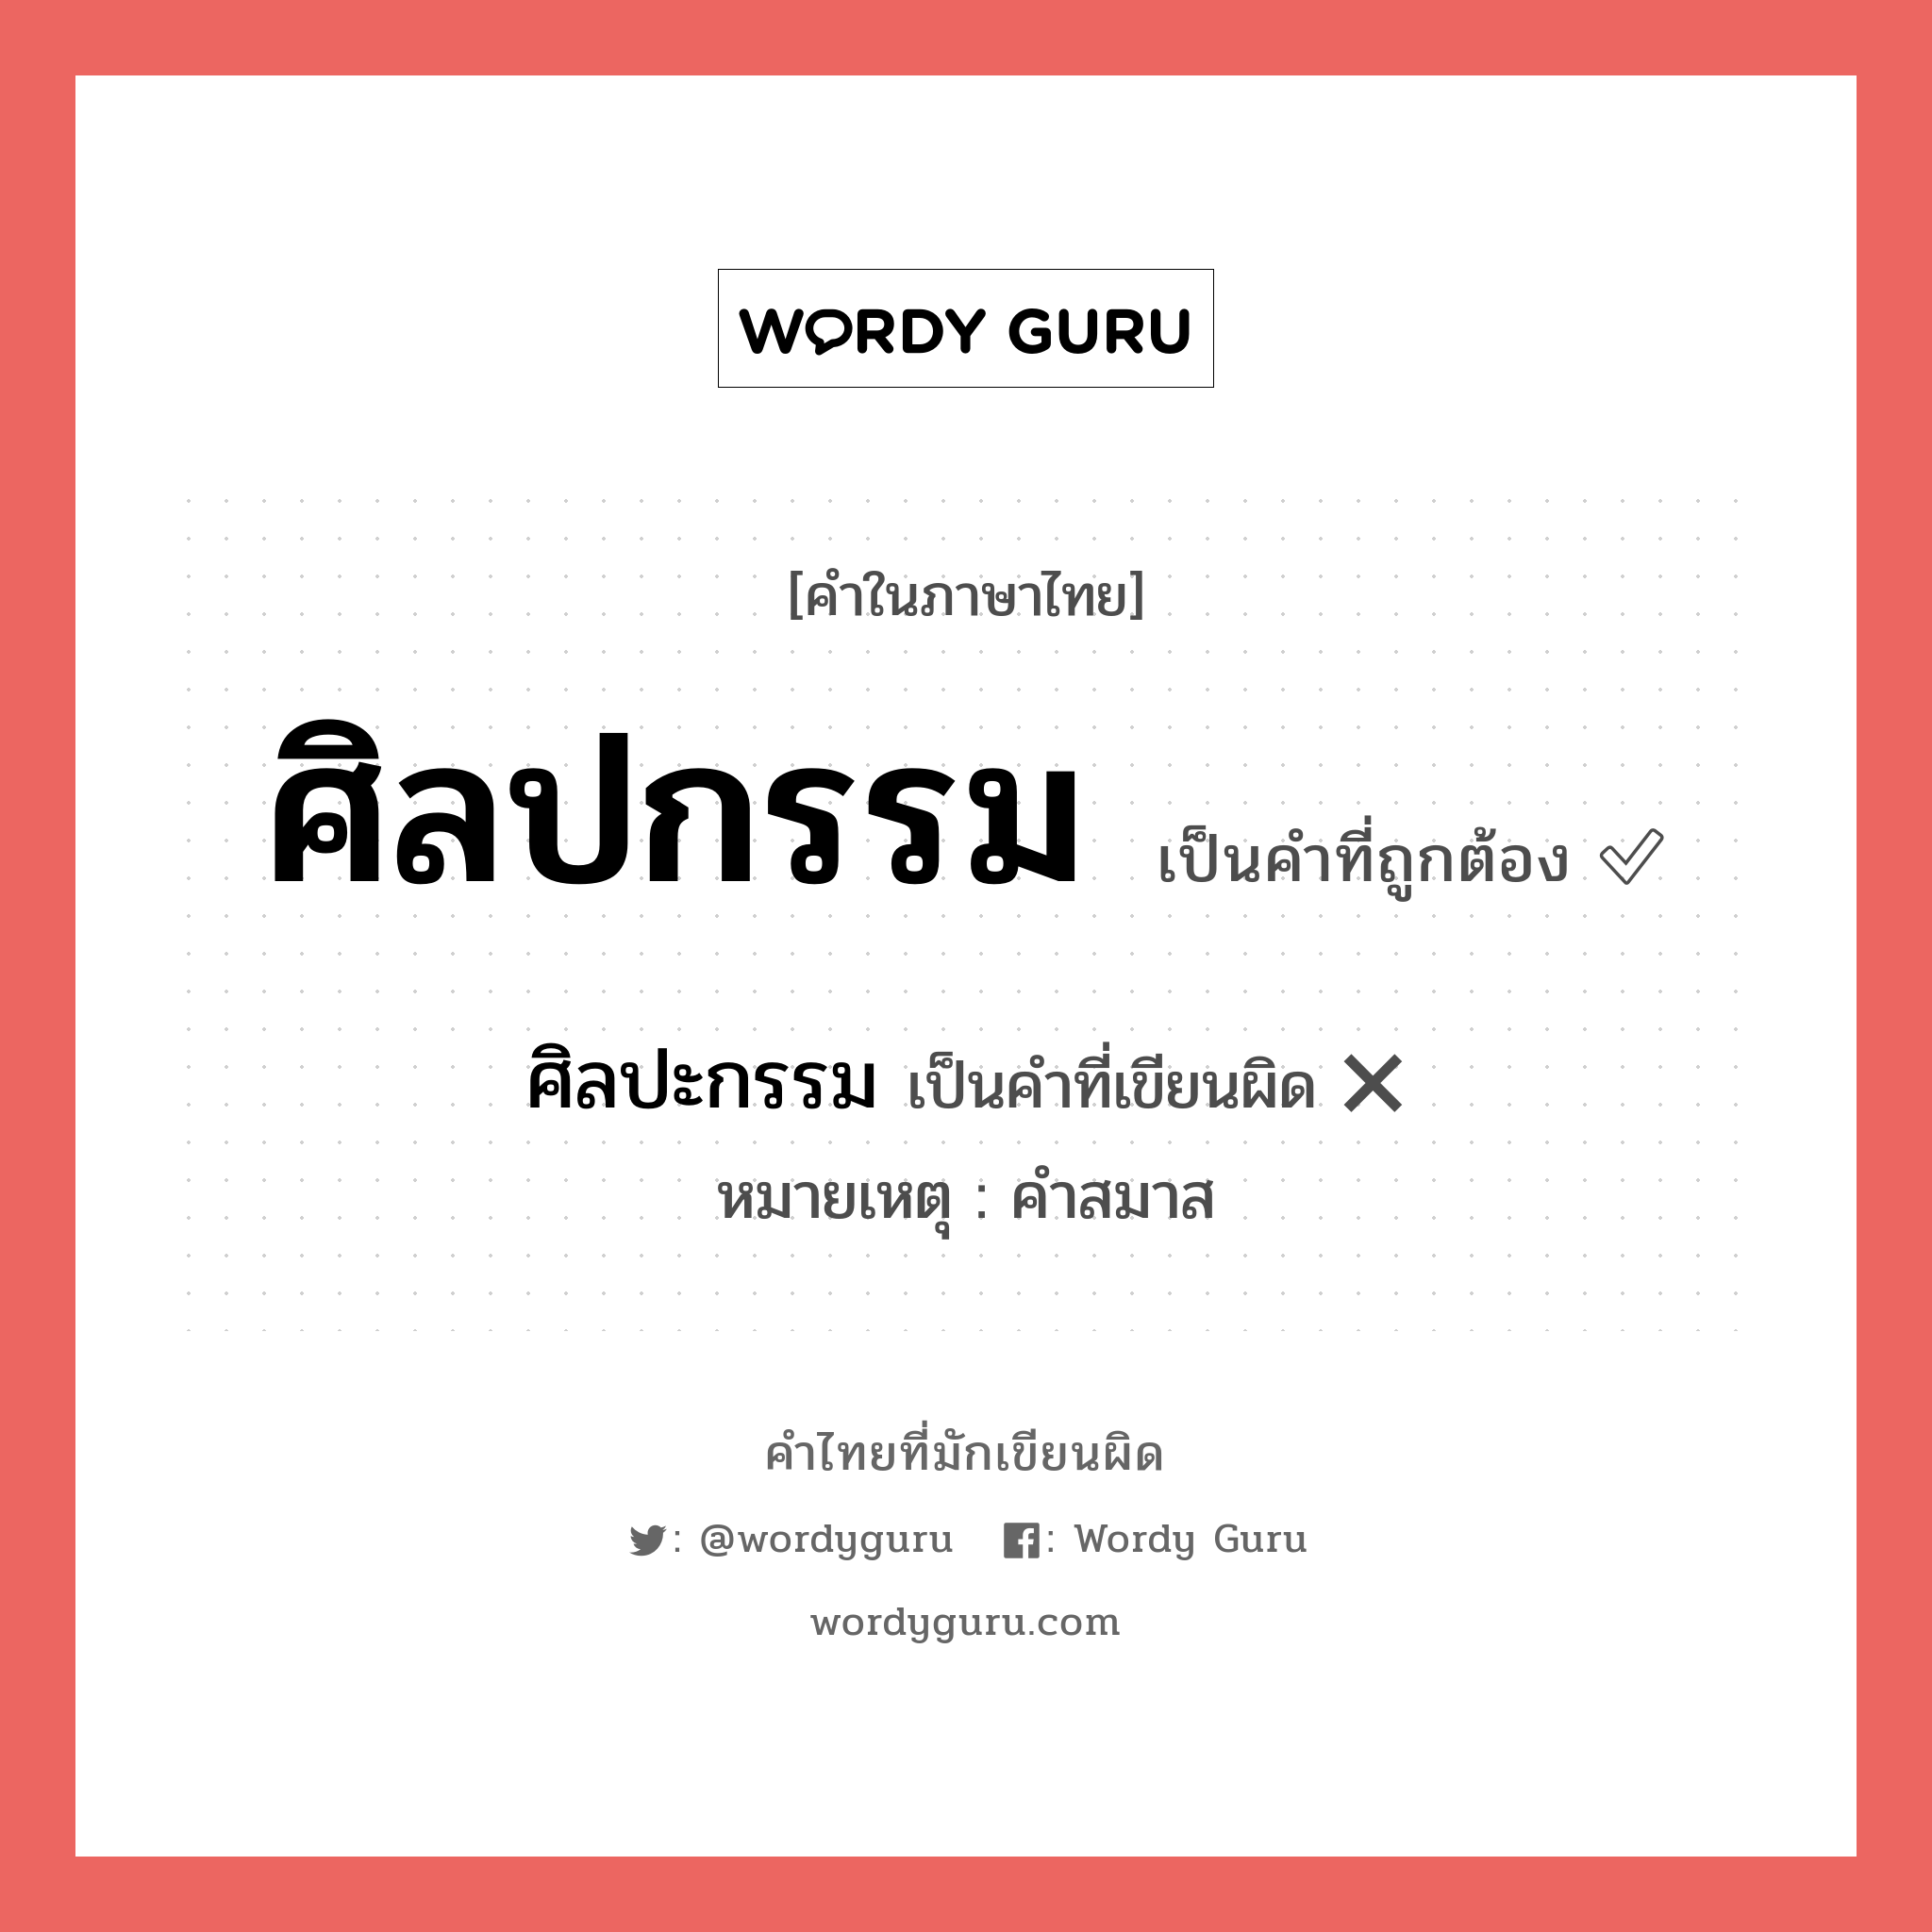 ศิลปะกรรม หรือ ศิลปกรรม คำไหนเขียนถูก?, คำในภาษาไทยที่มักเขียนผิด ศิลปะกรรม คำที่ผิด ❌ ศิลปกรรม หมายเหตุ คำสมาส